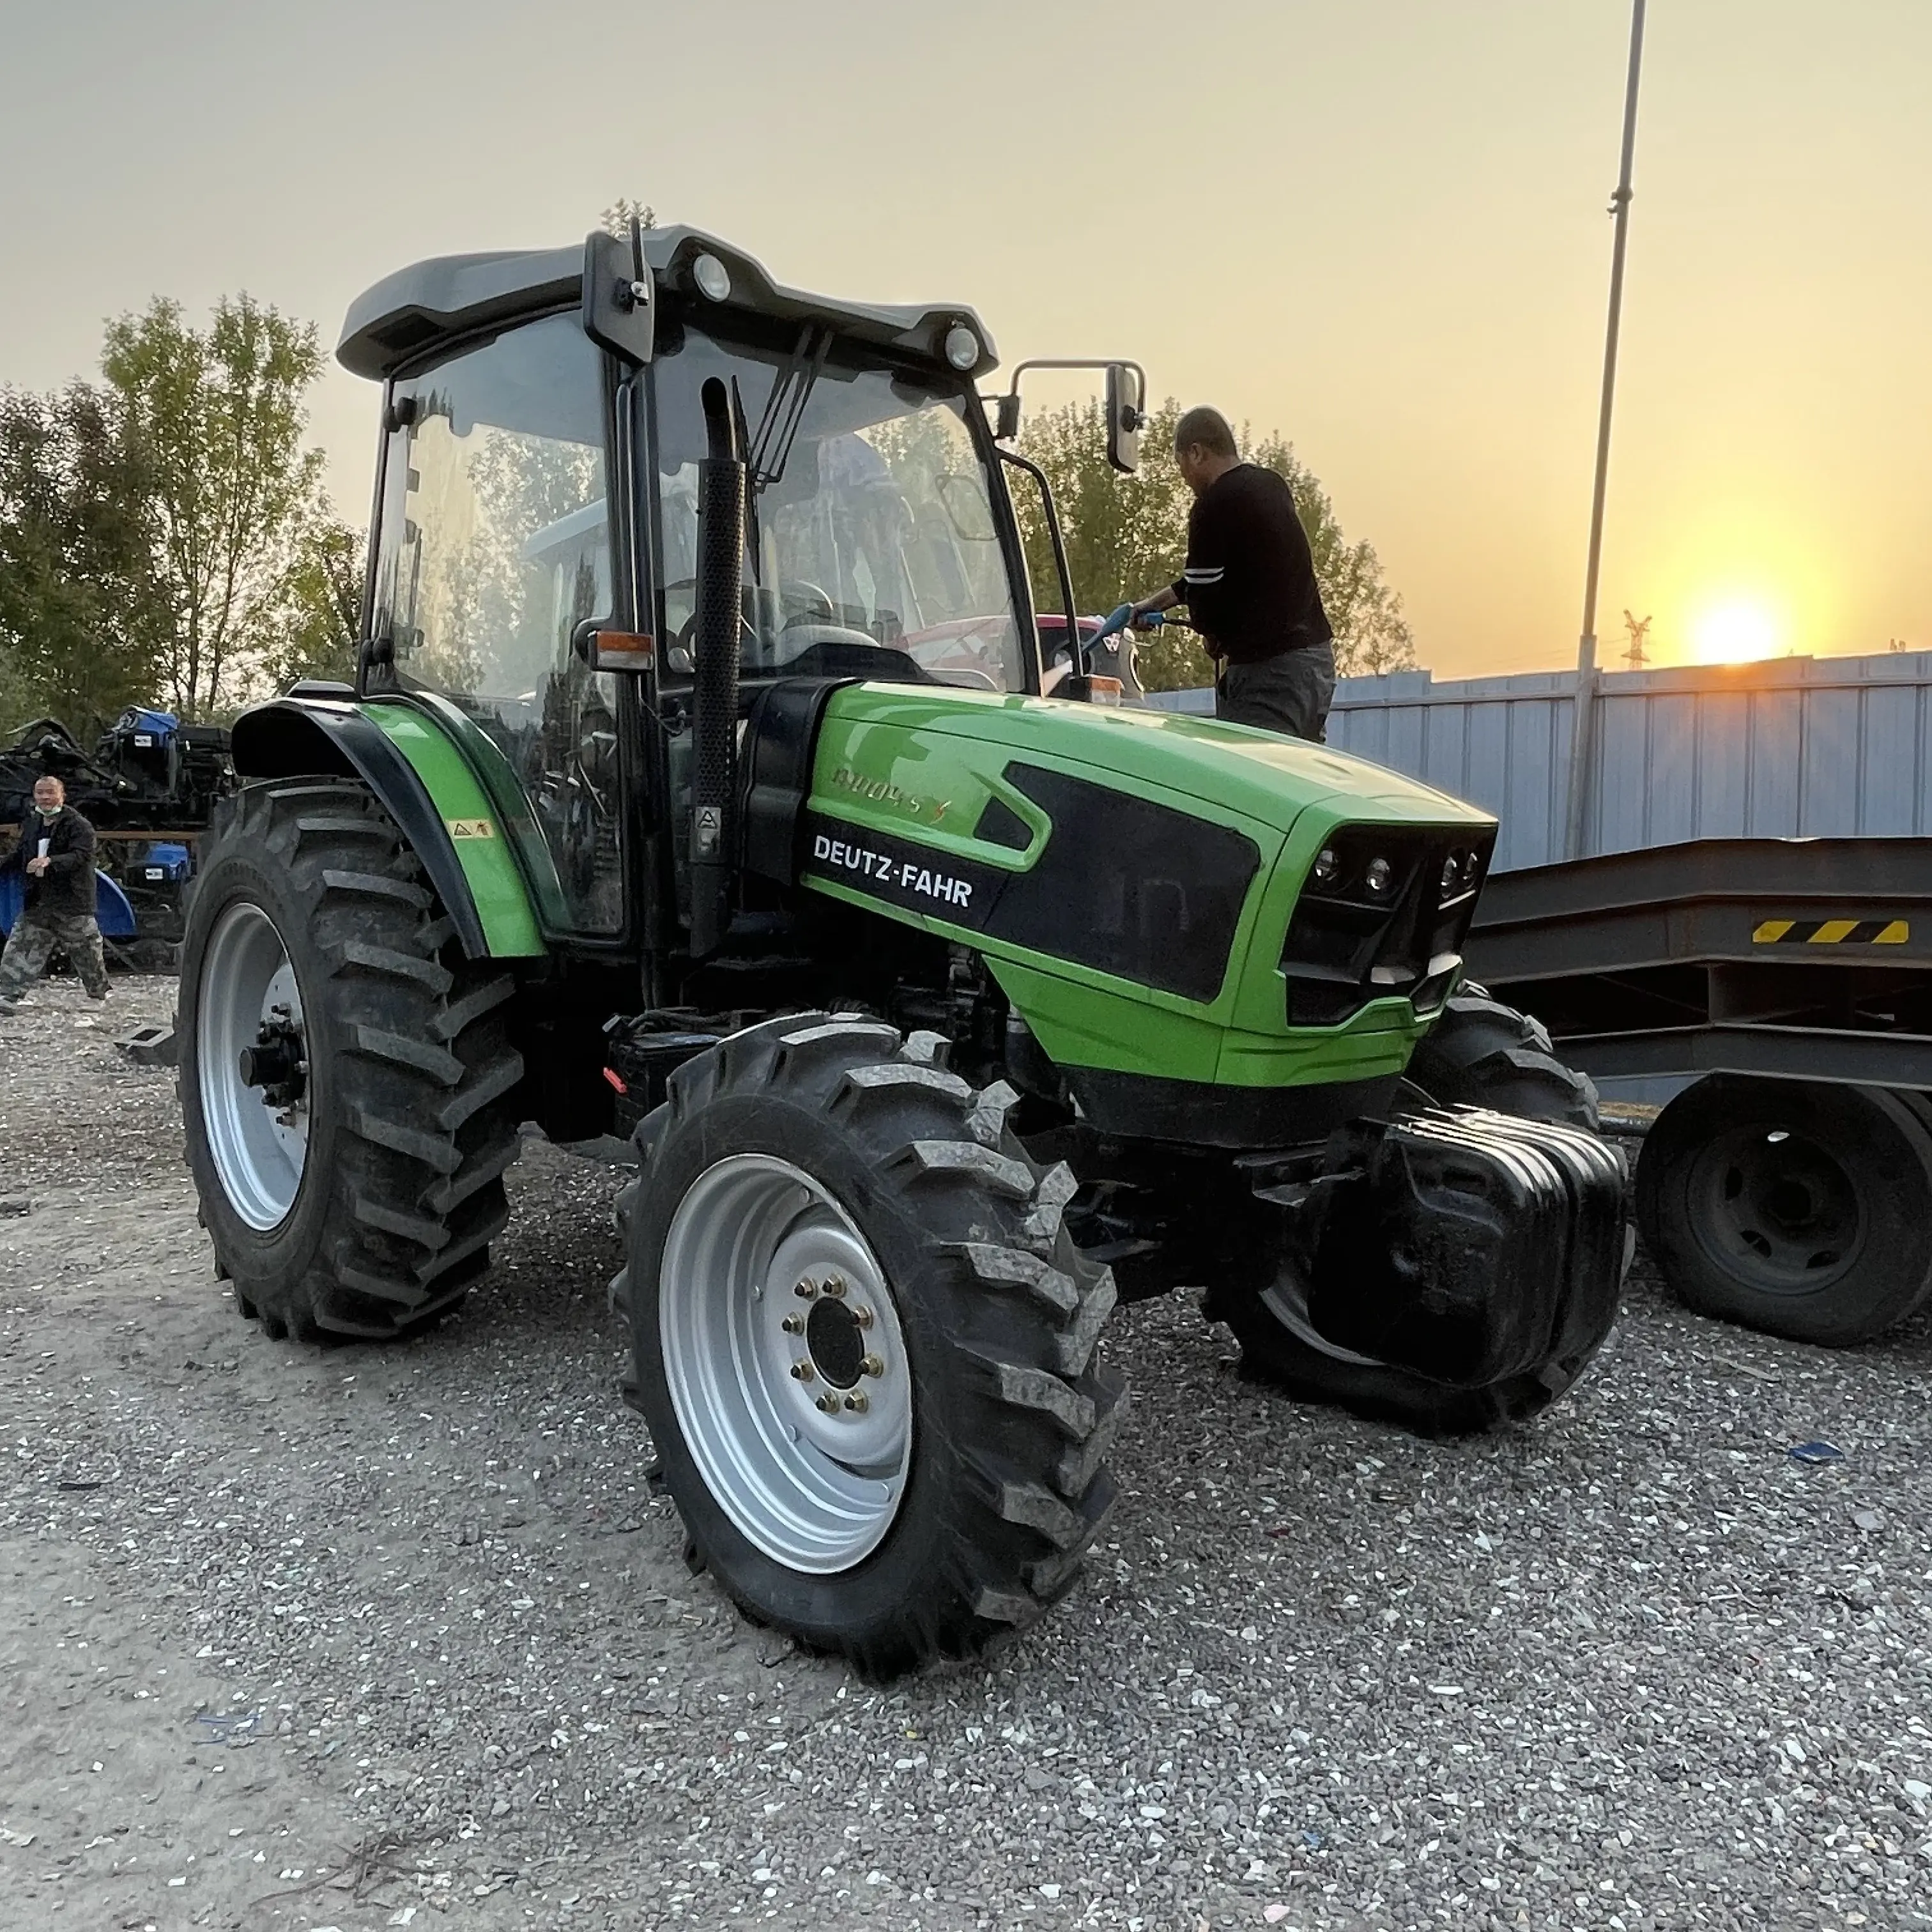 Tractor de granja usado Hp Deutz Fahr, con neumáticos para arroz, 100